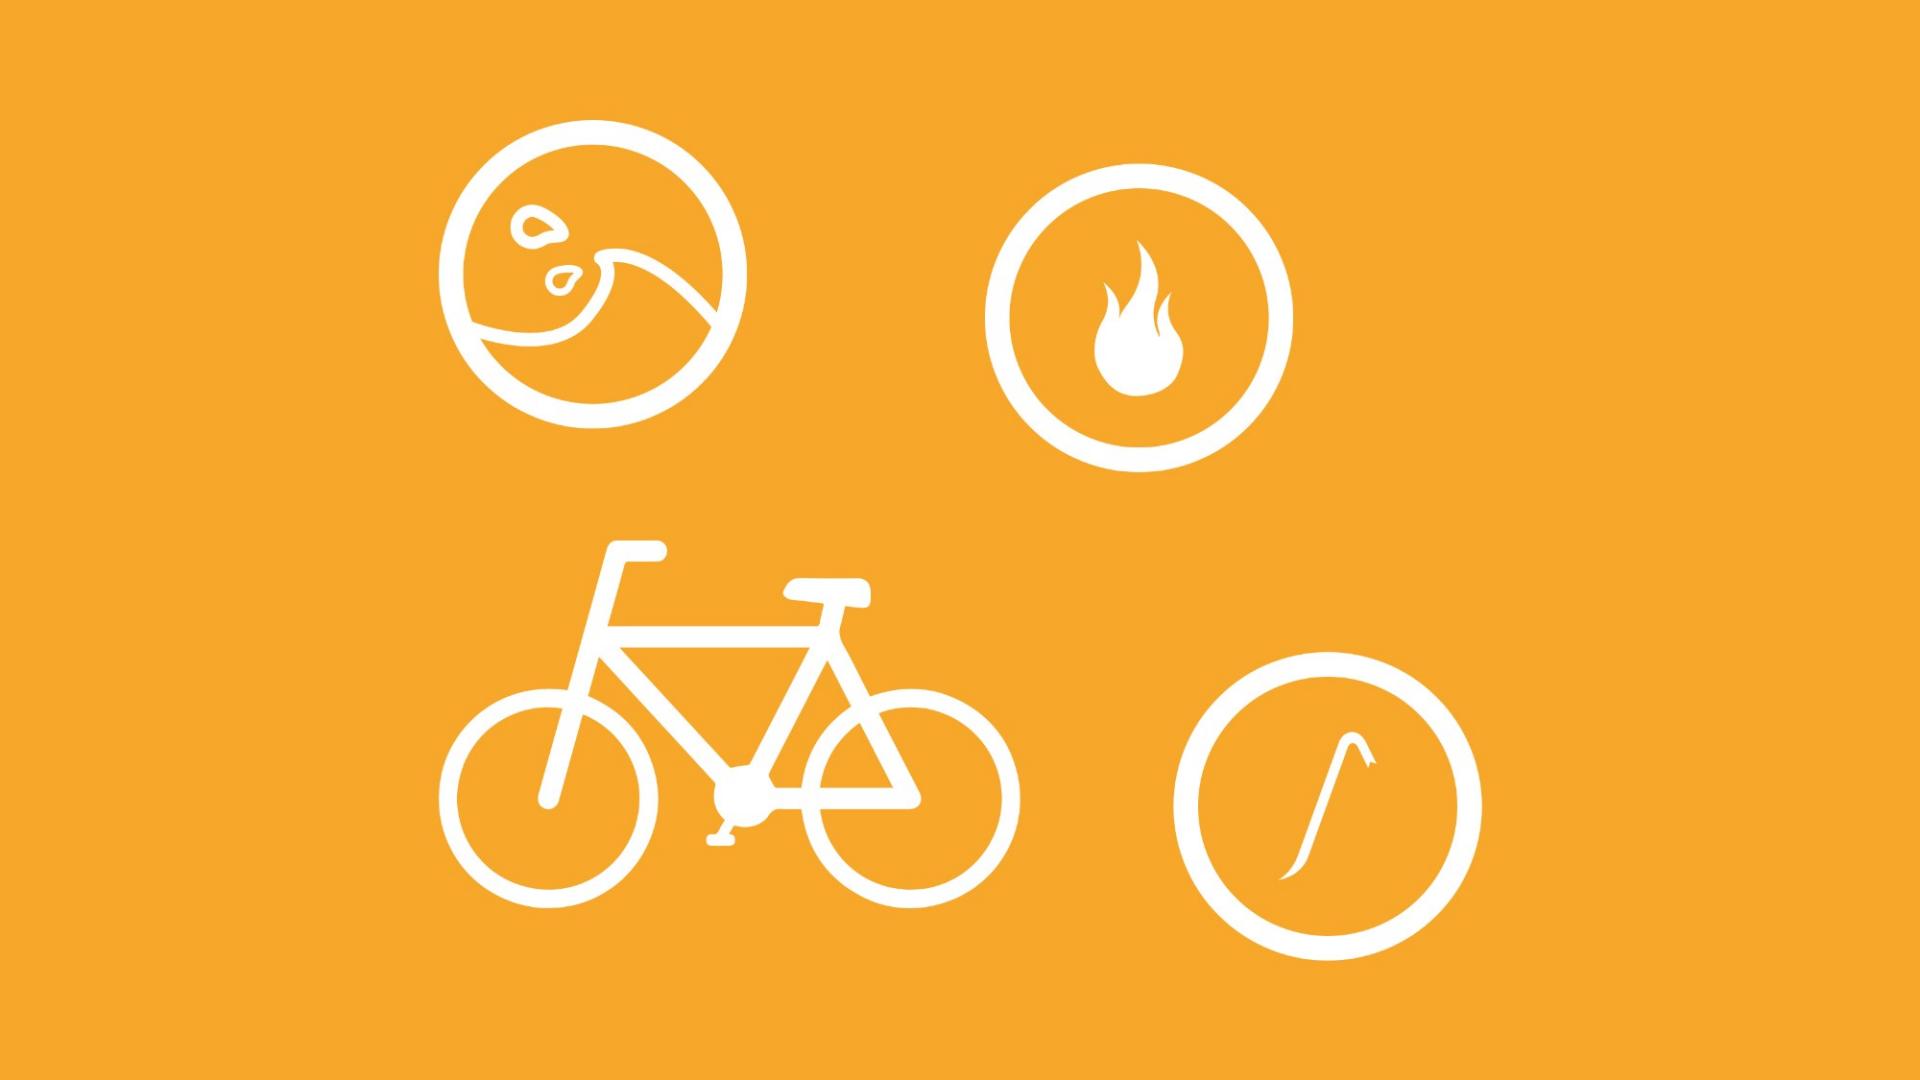 Potenzielle Schäden an einem Fahrrad, die eine Hausratversicherung abdeckt, sind als Icons dargestellt.